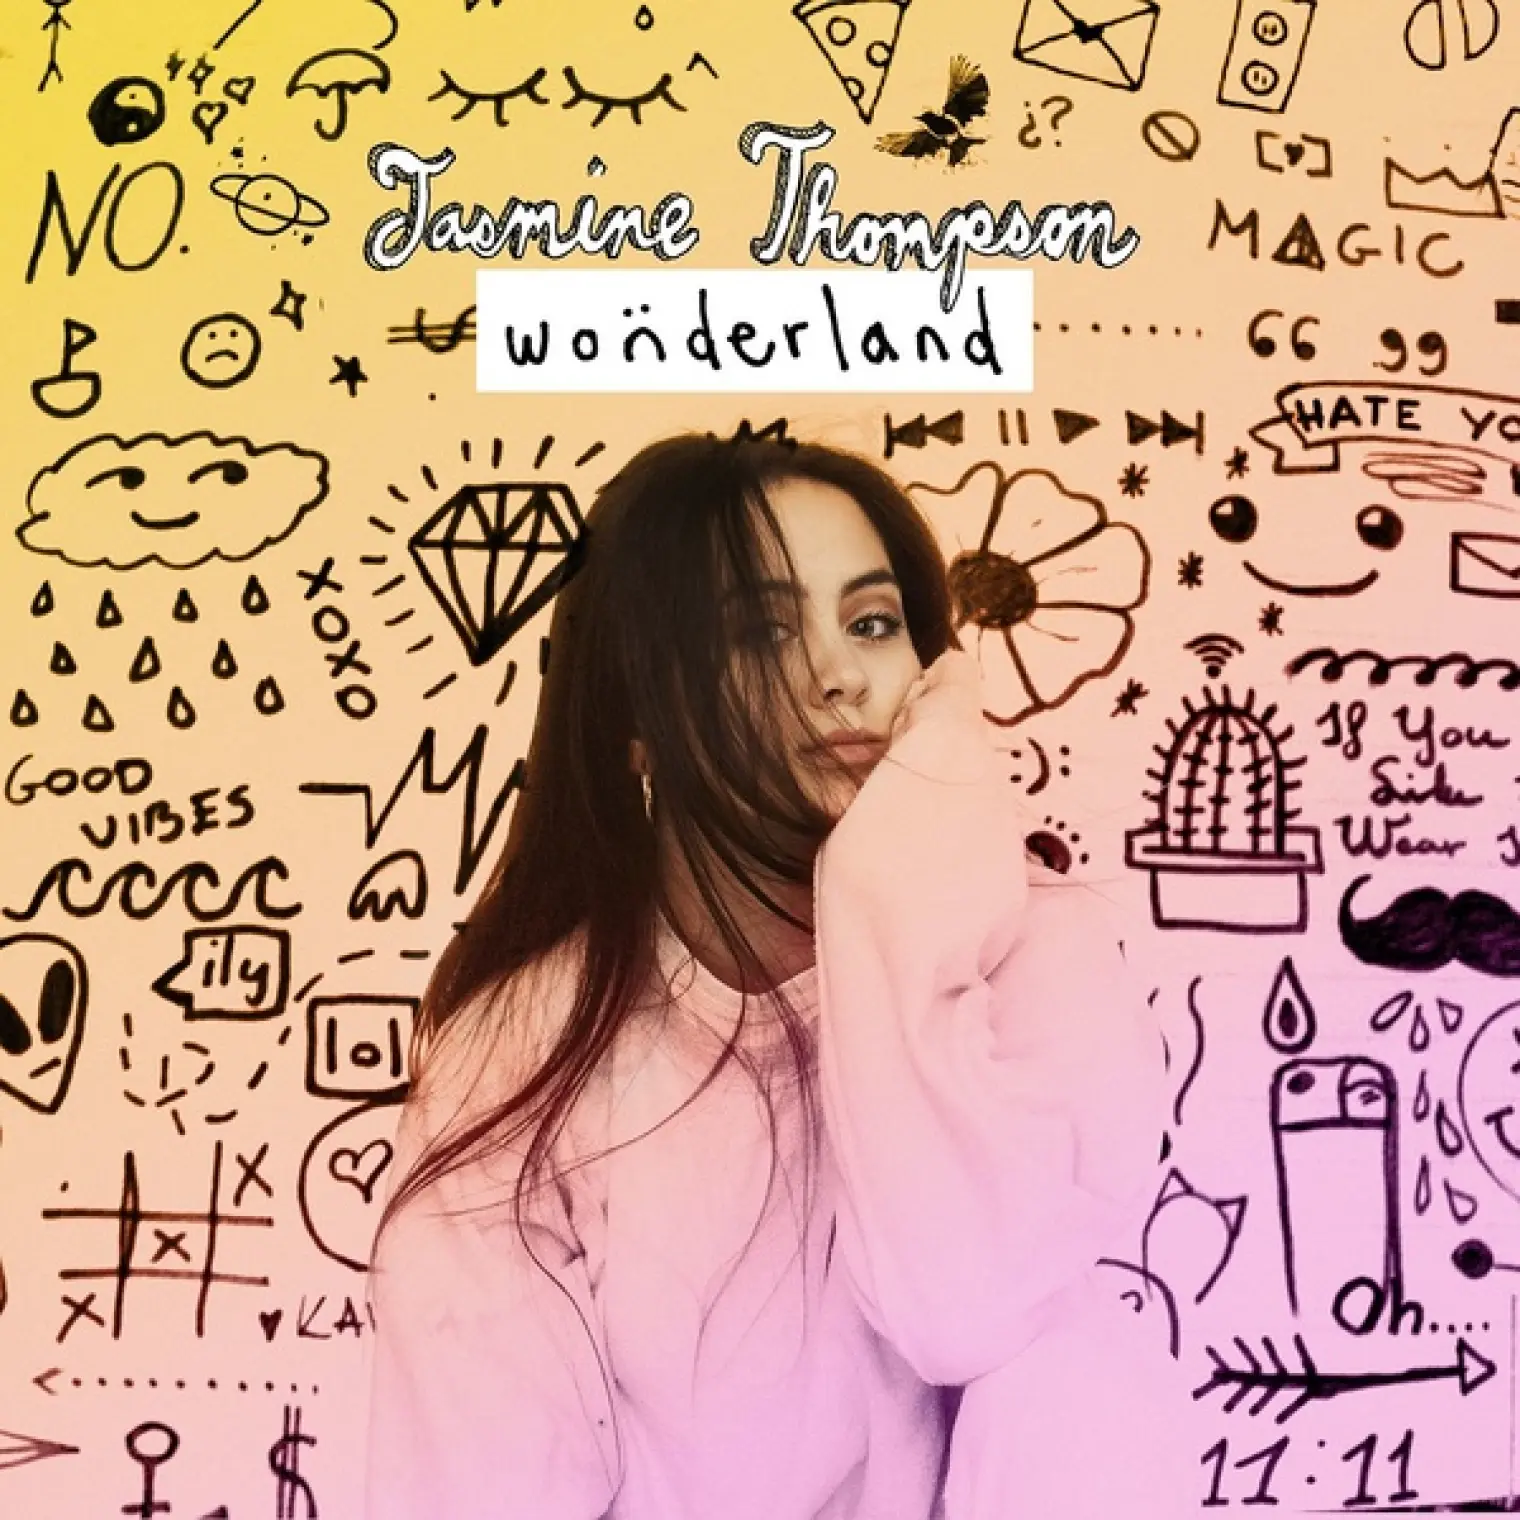 Wonderland -  Jasmine Thompson 